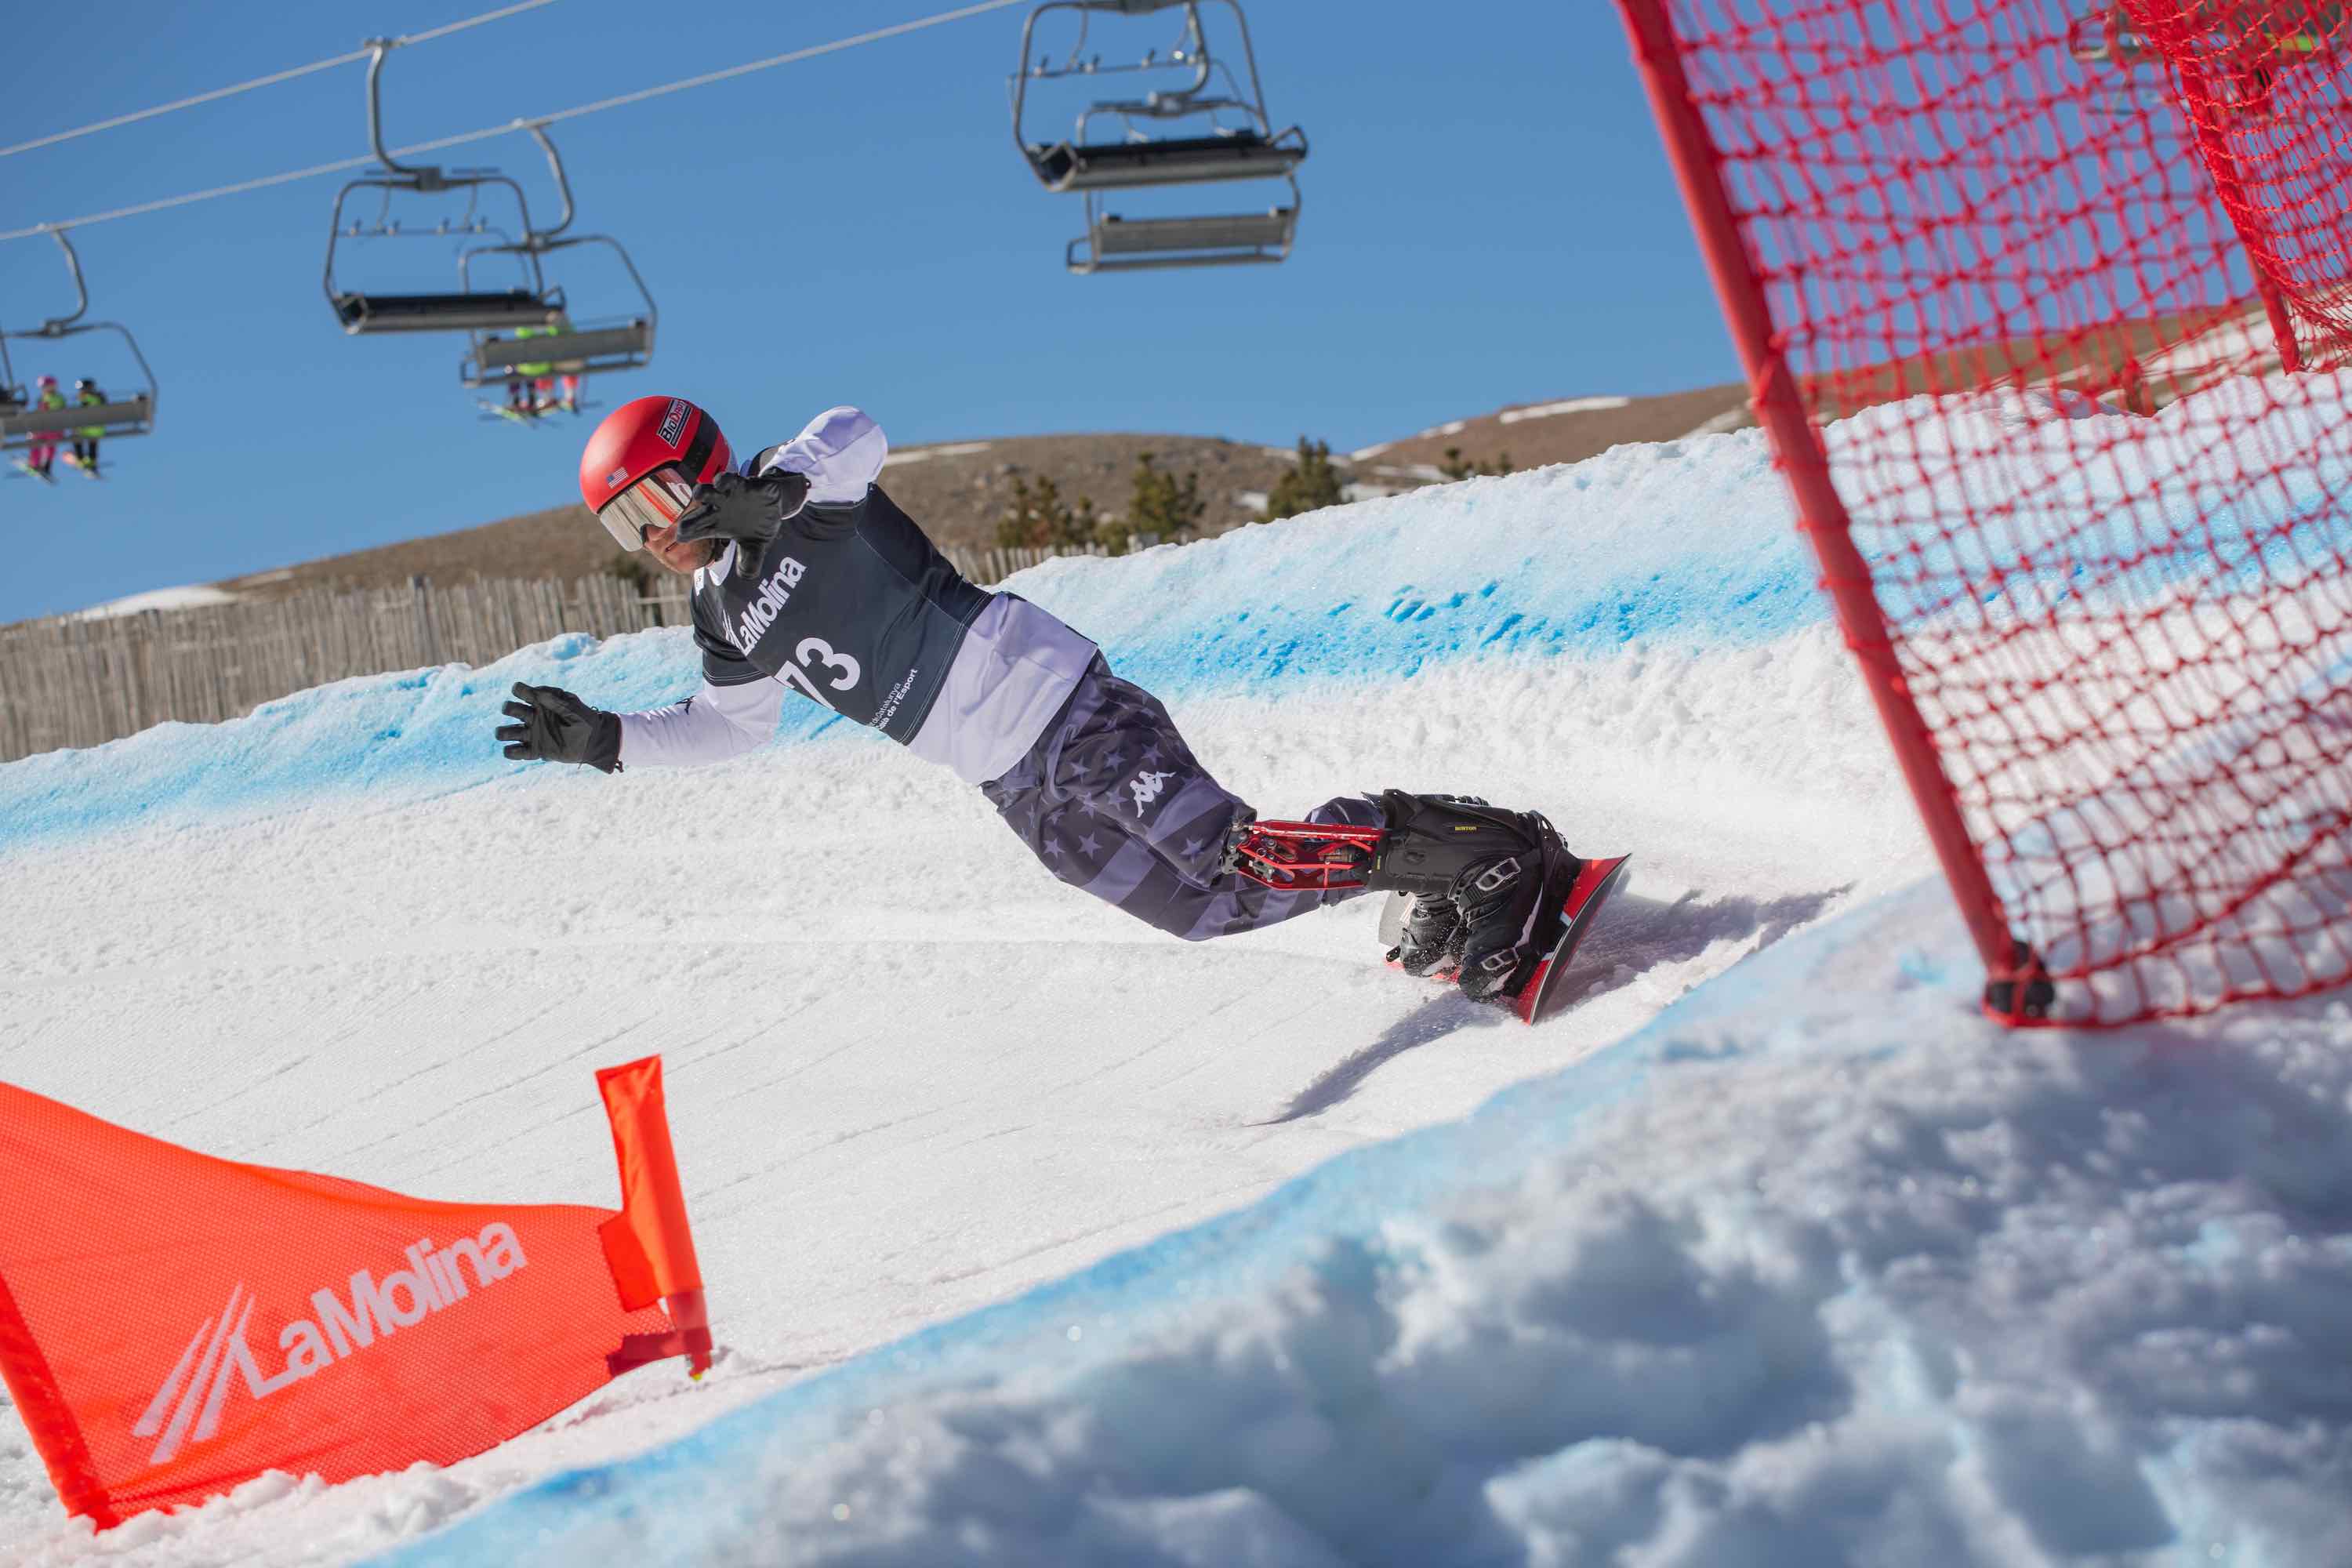 Los Mundiales de snowboard adaptado de La Molina tocan a su fin